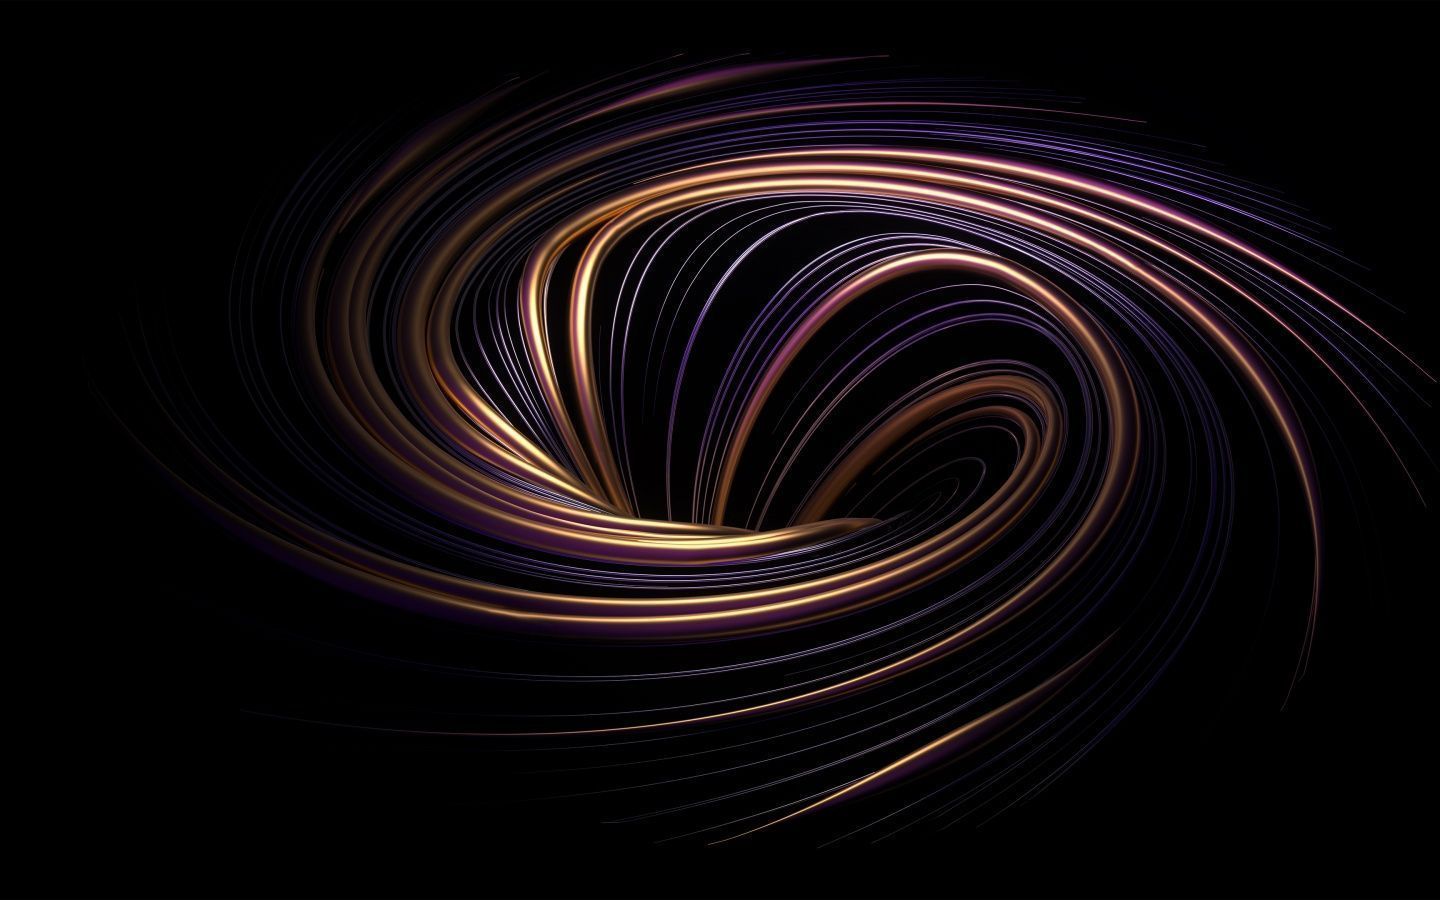 Spiral vortex Wallpaper 4K, Dark aesthetic